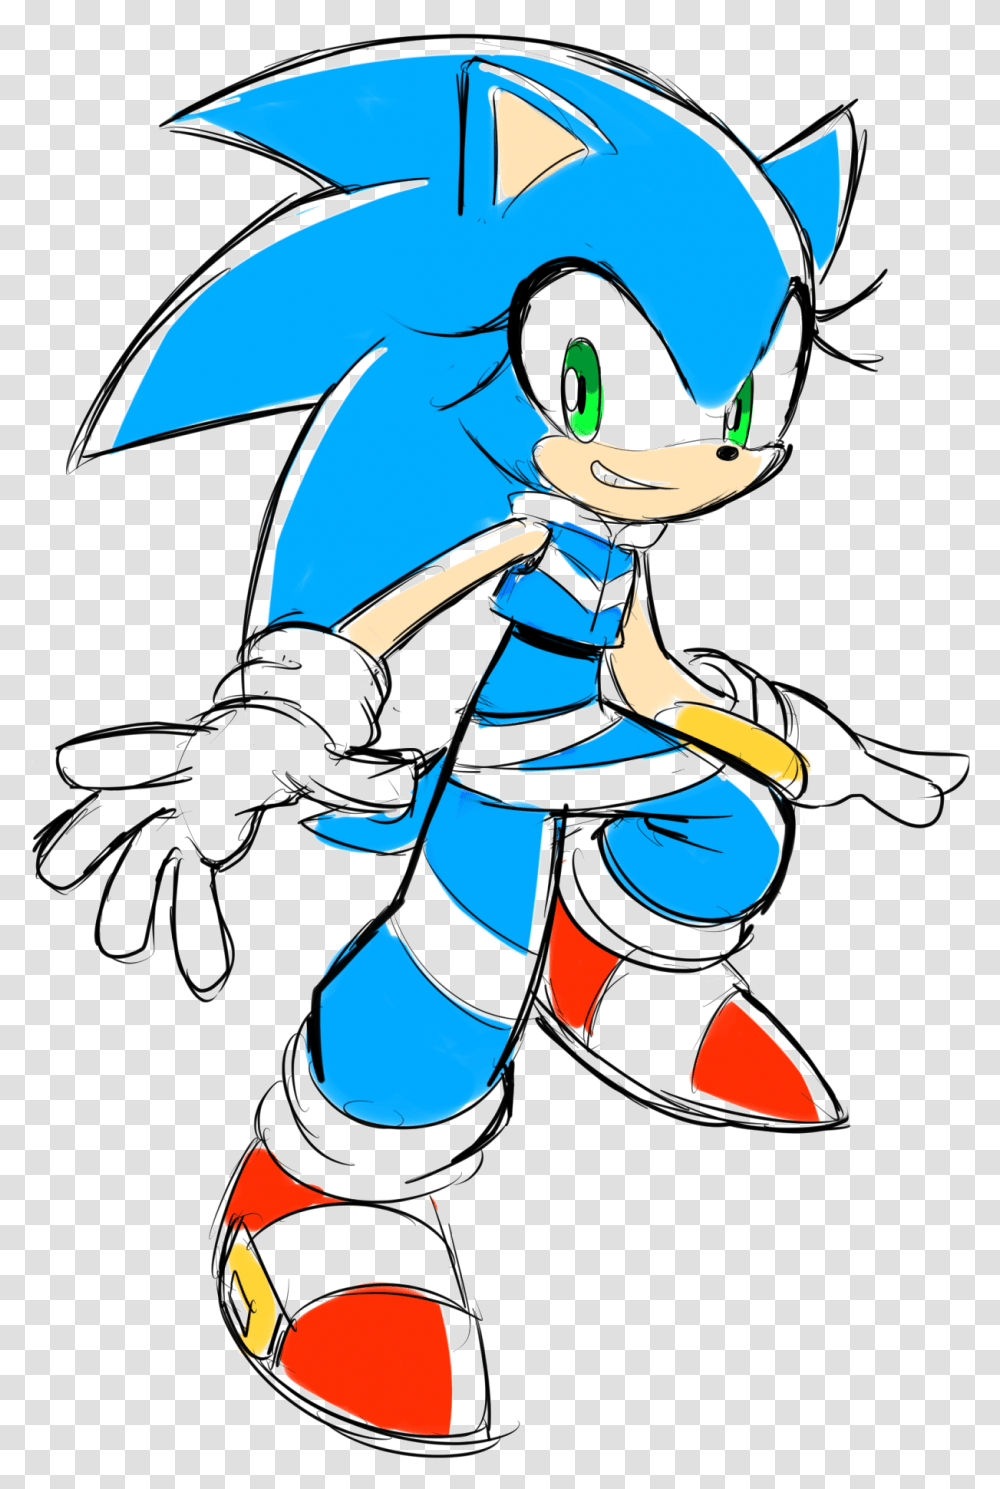 Sonic The Hedgehog Image Background Sonic The Hedgehog Gender Bender Sonic, Ninja Transparent Png